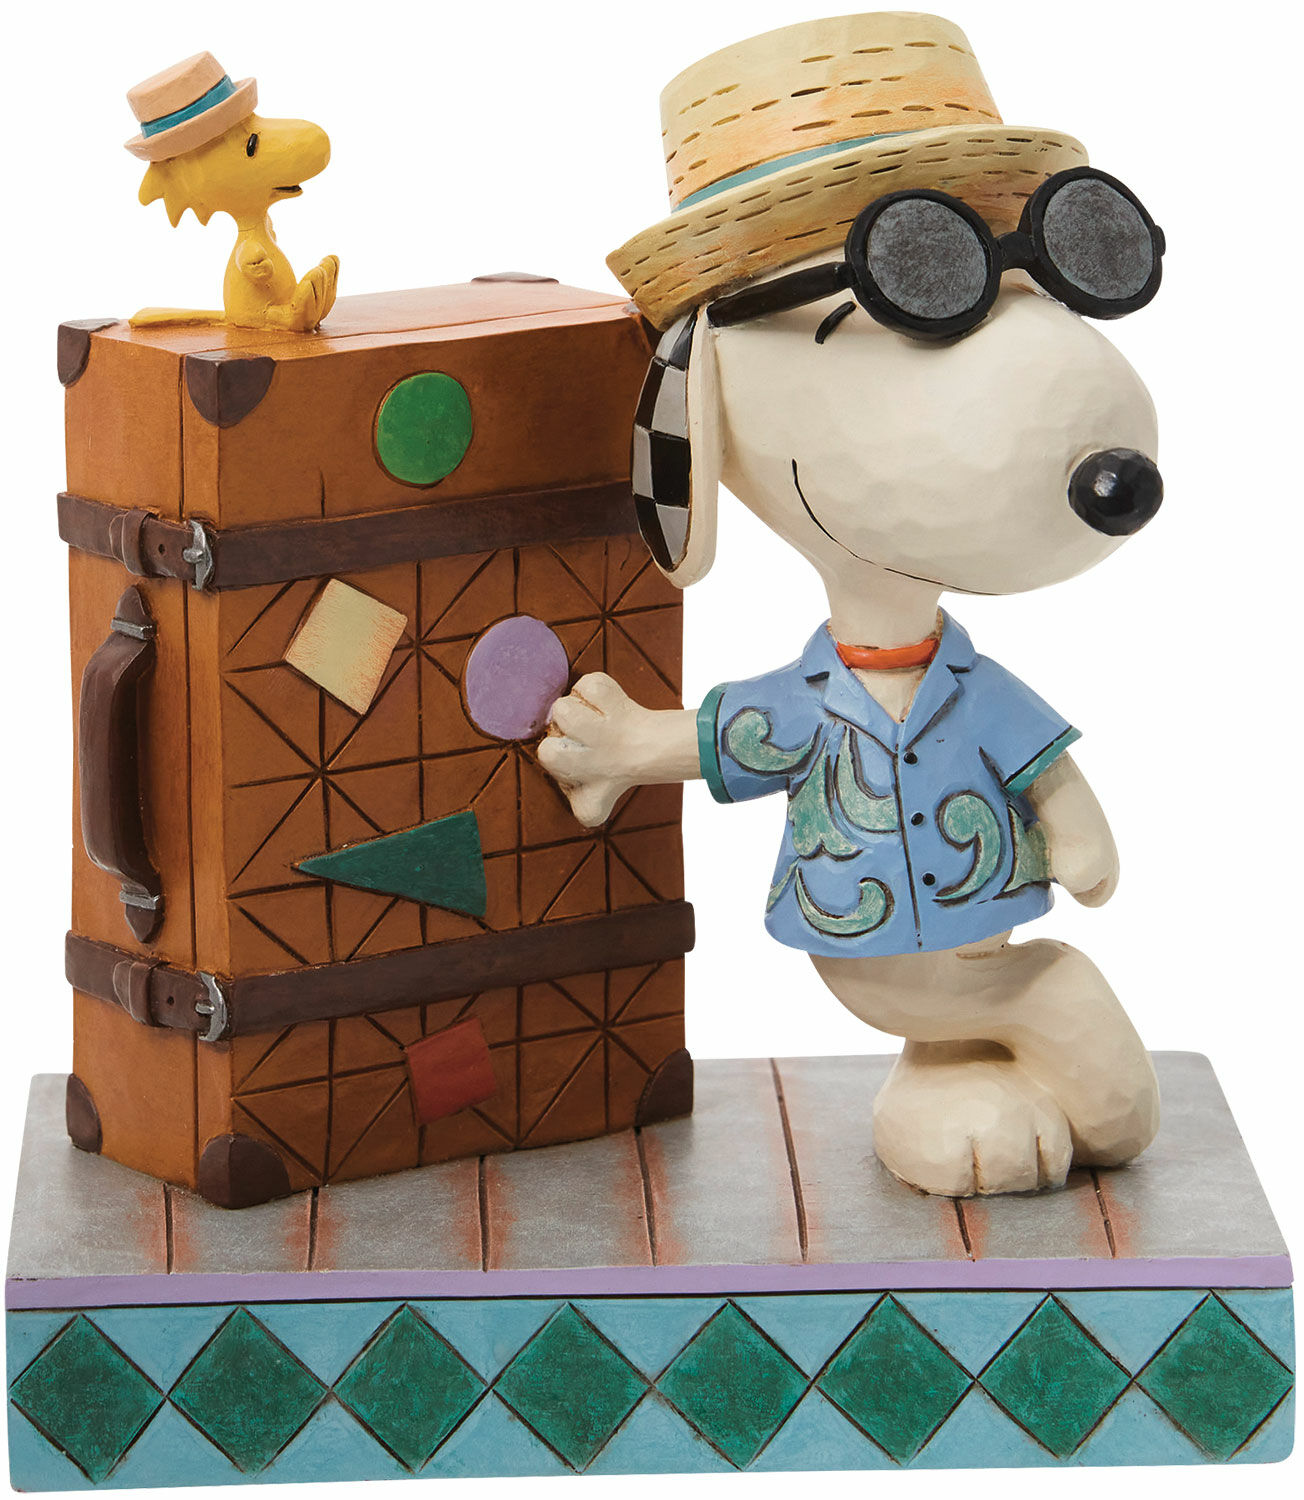 Skulptur "Snoopy og Woodstock på rejse", støbt von Jim Shore